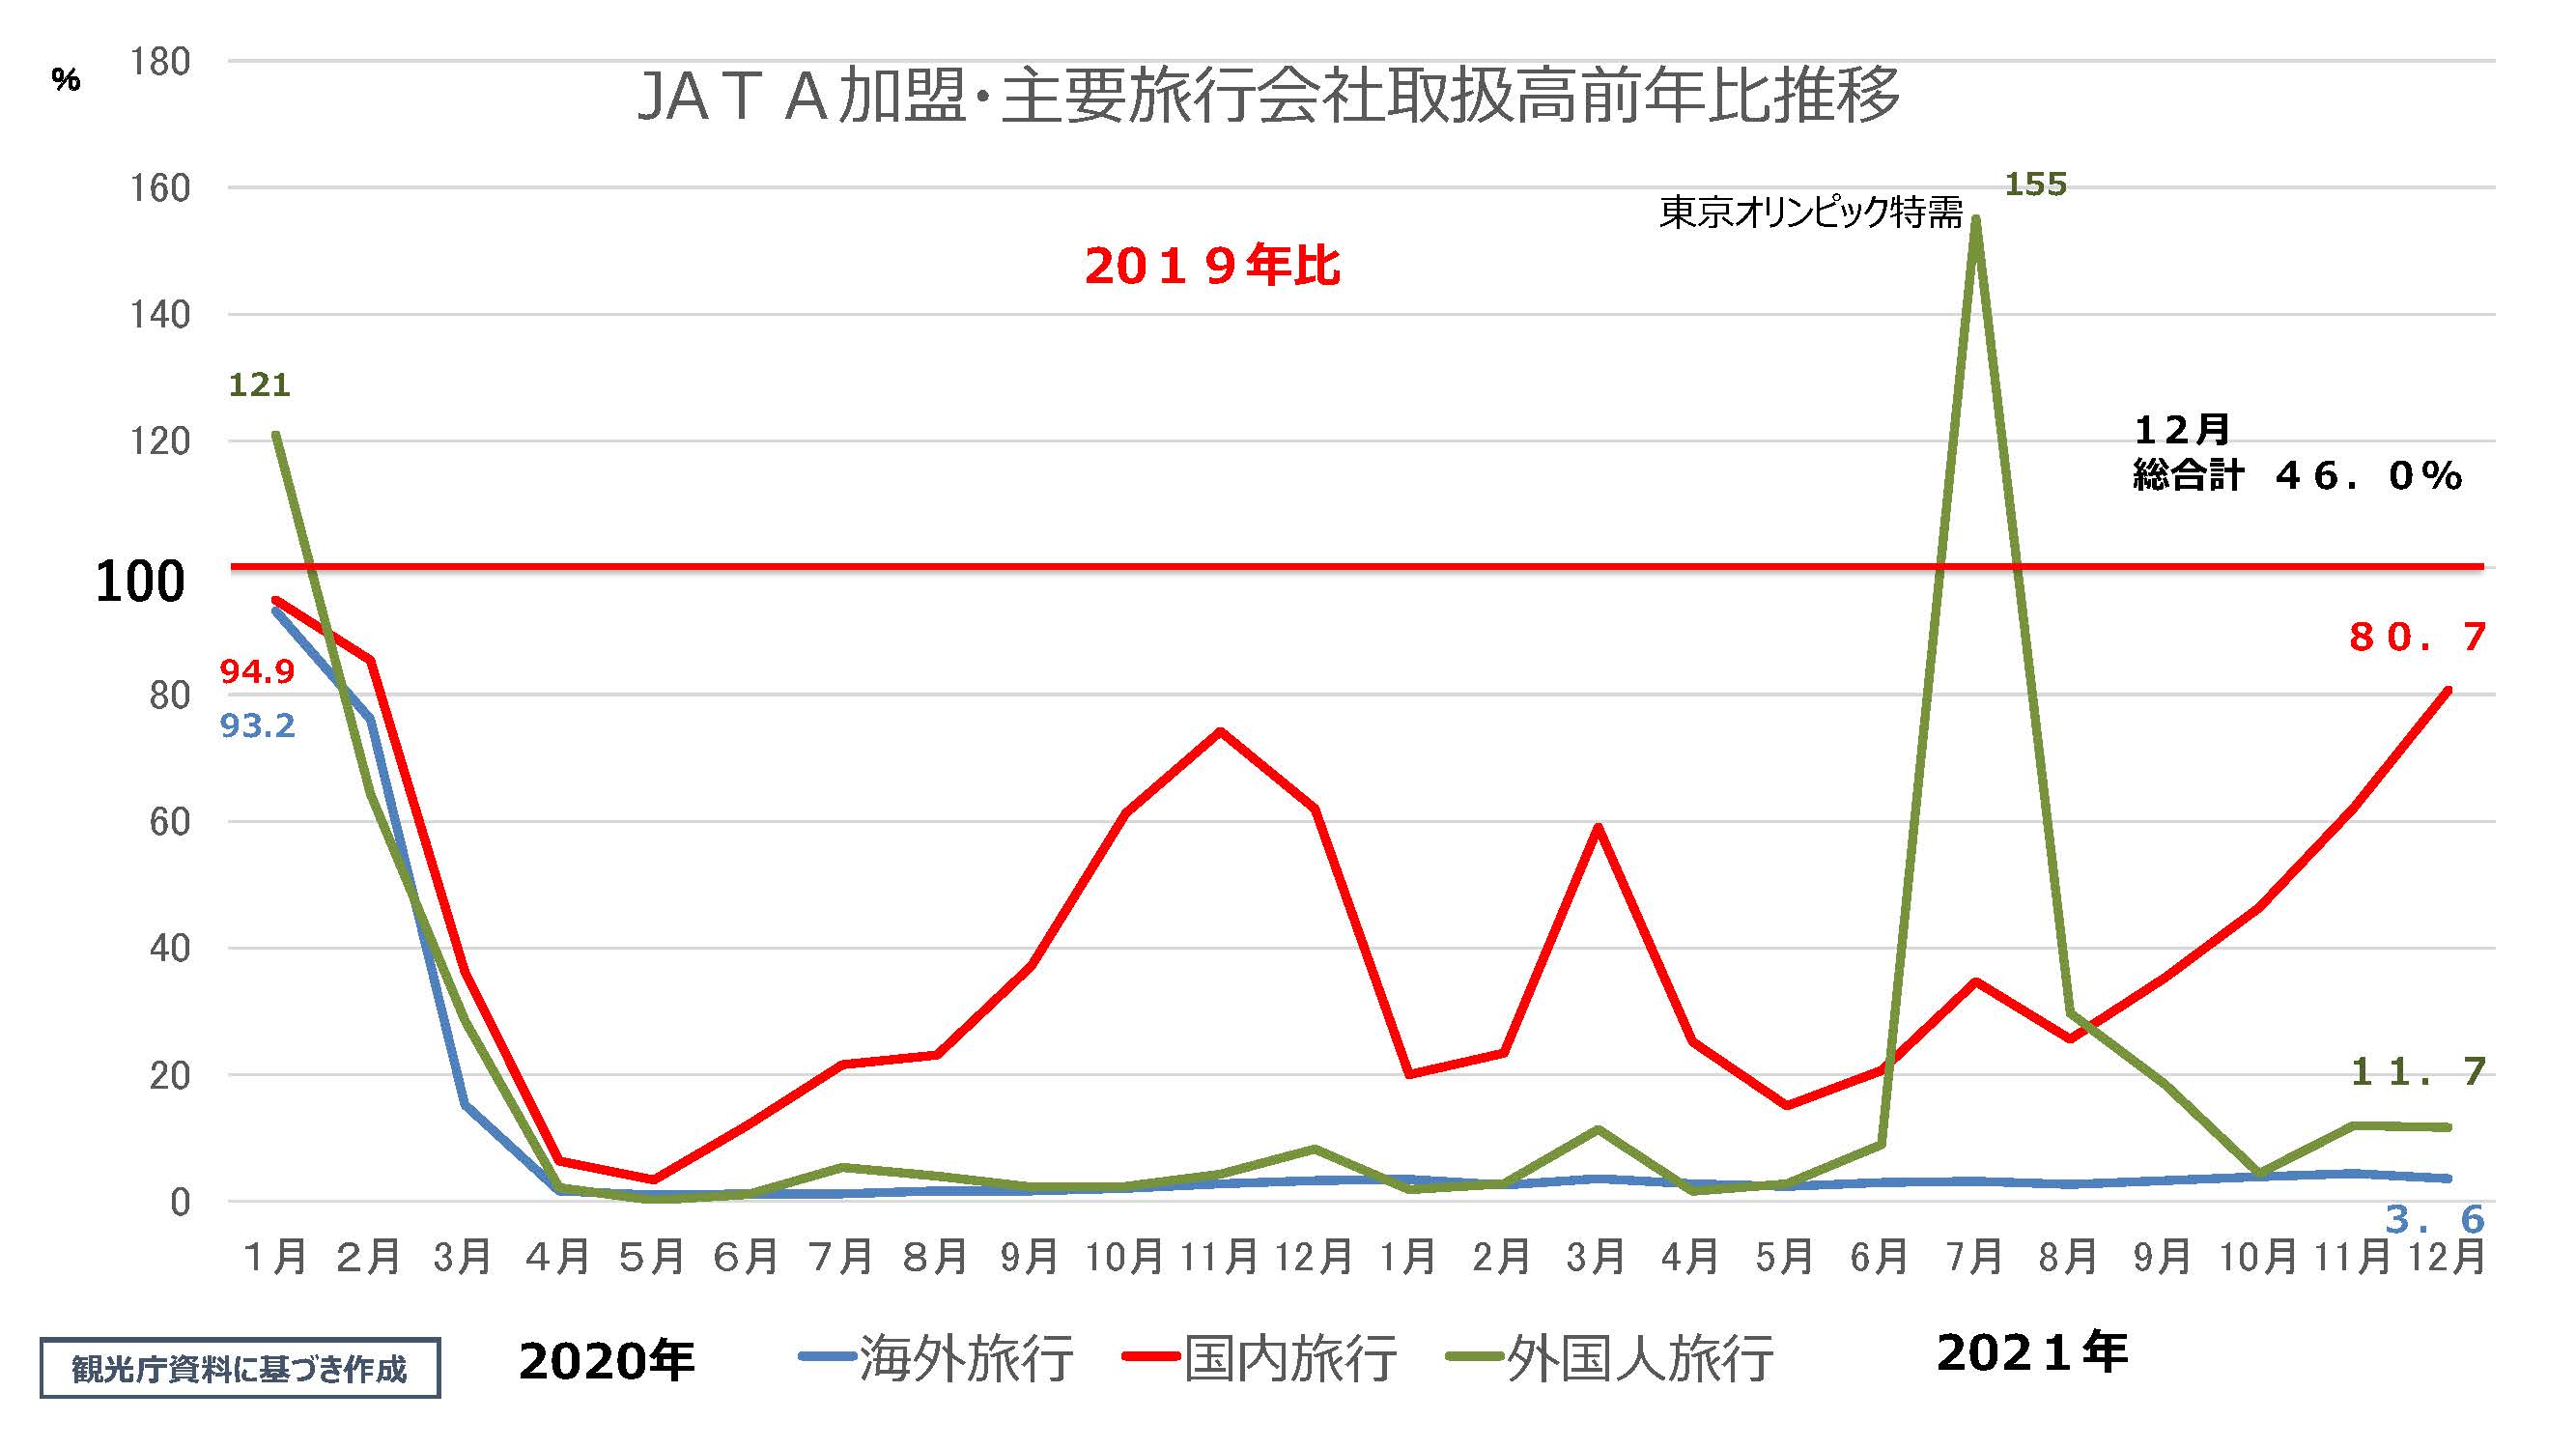 JATA加盟・主要旅行会社取扱高前年比推移